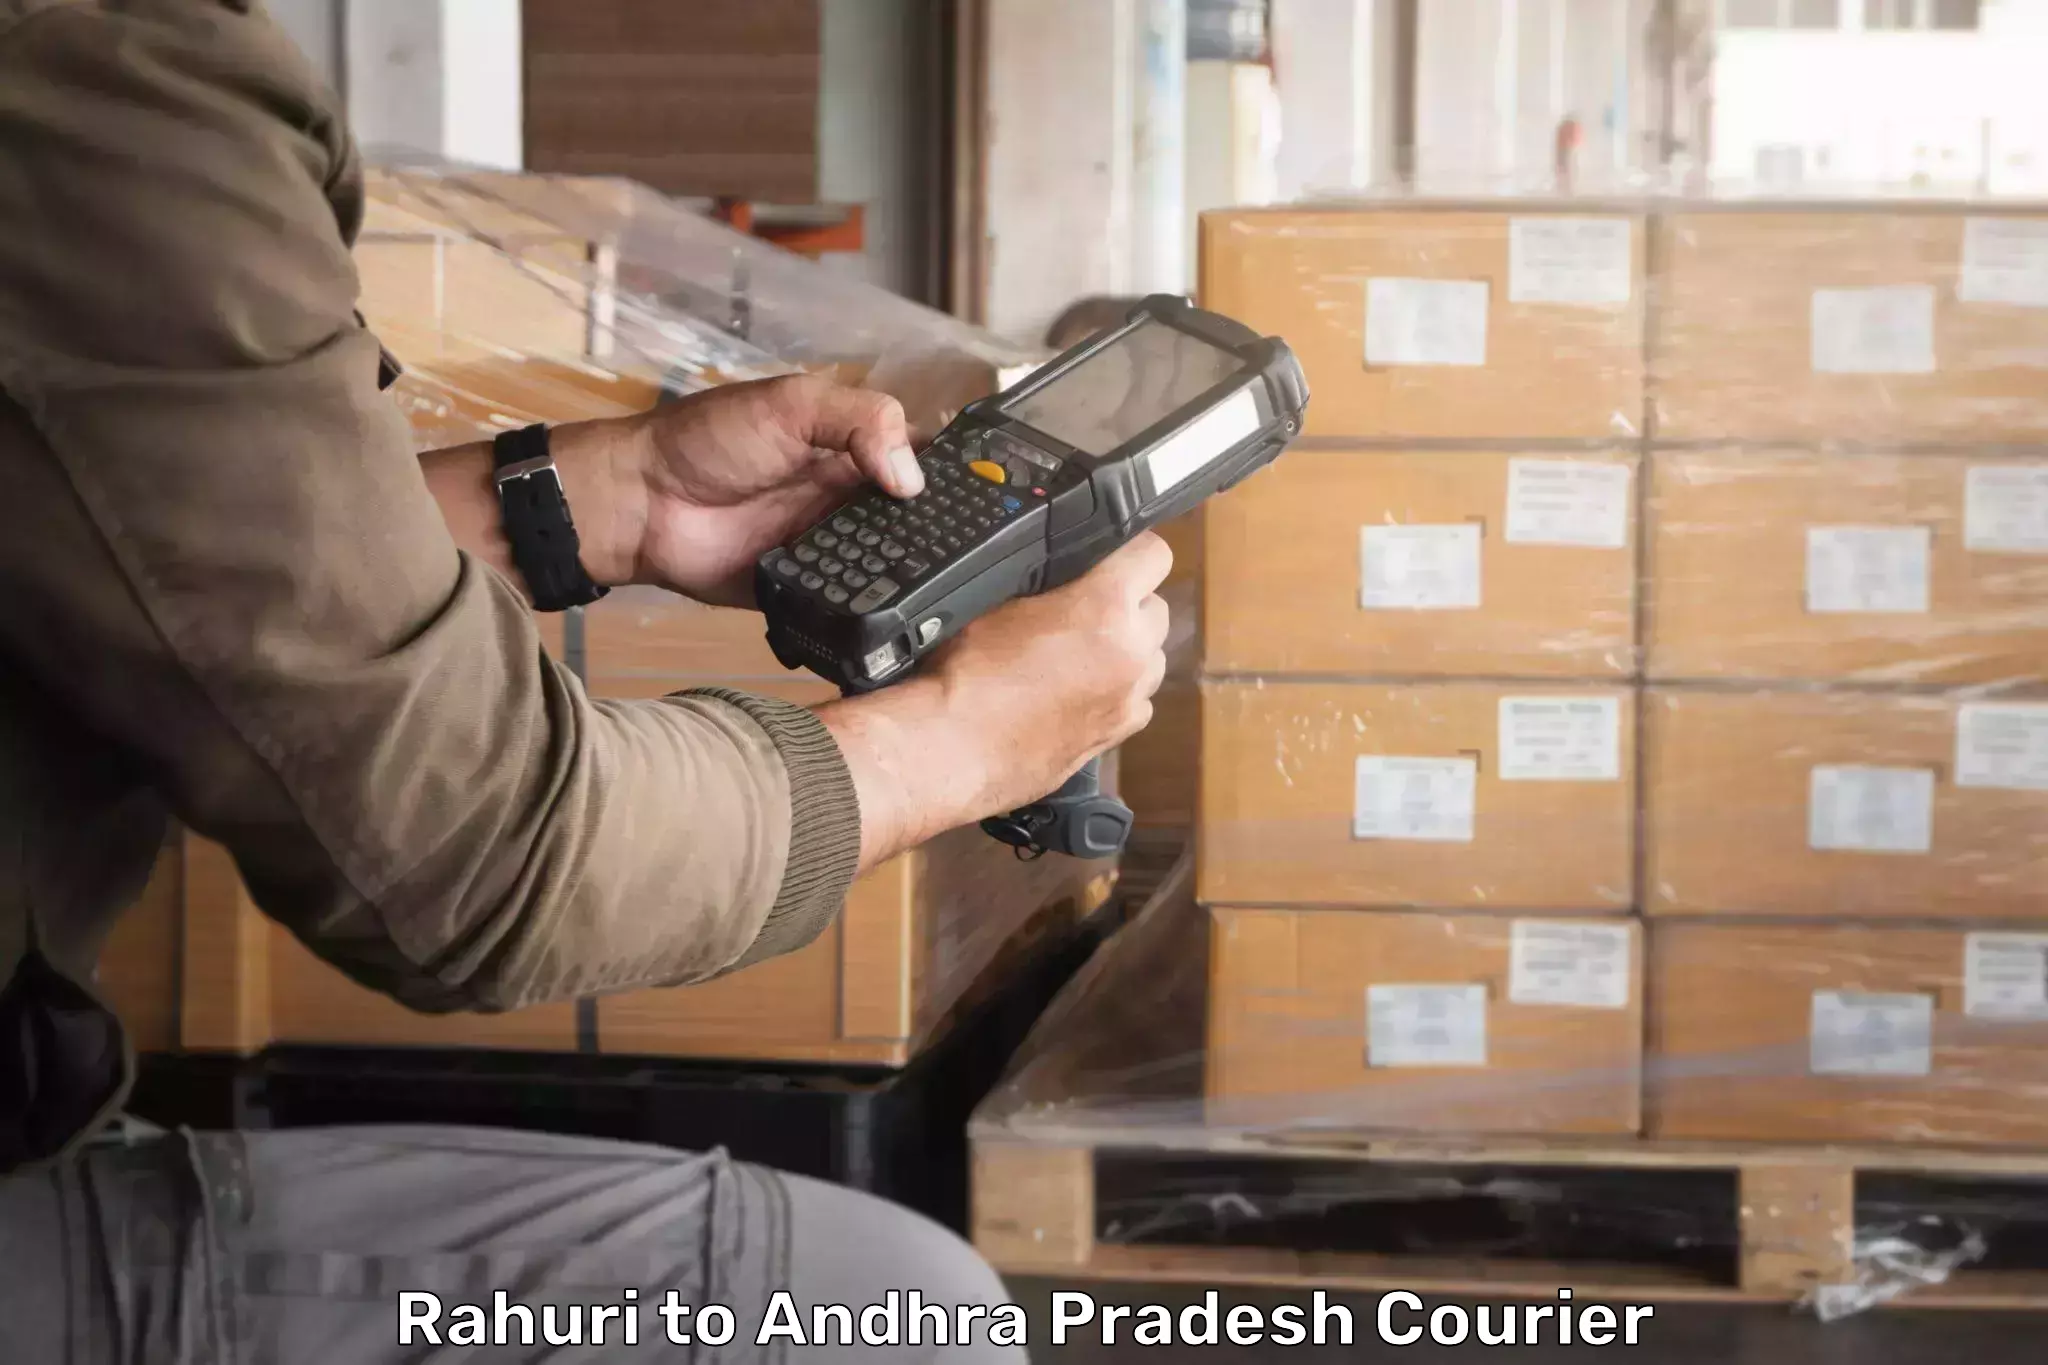 Personalized courier experiences Rahuri to Rampachodavaram